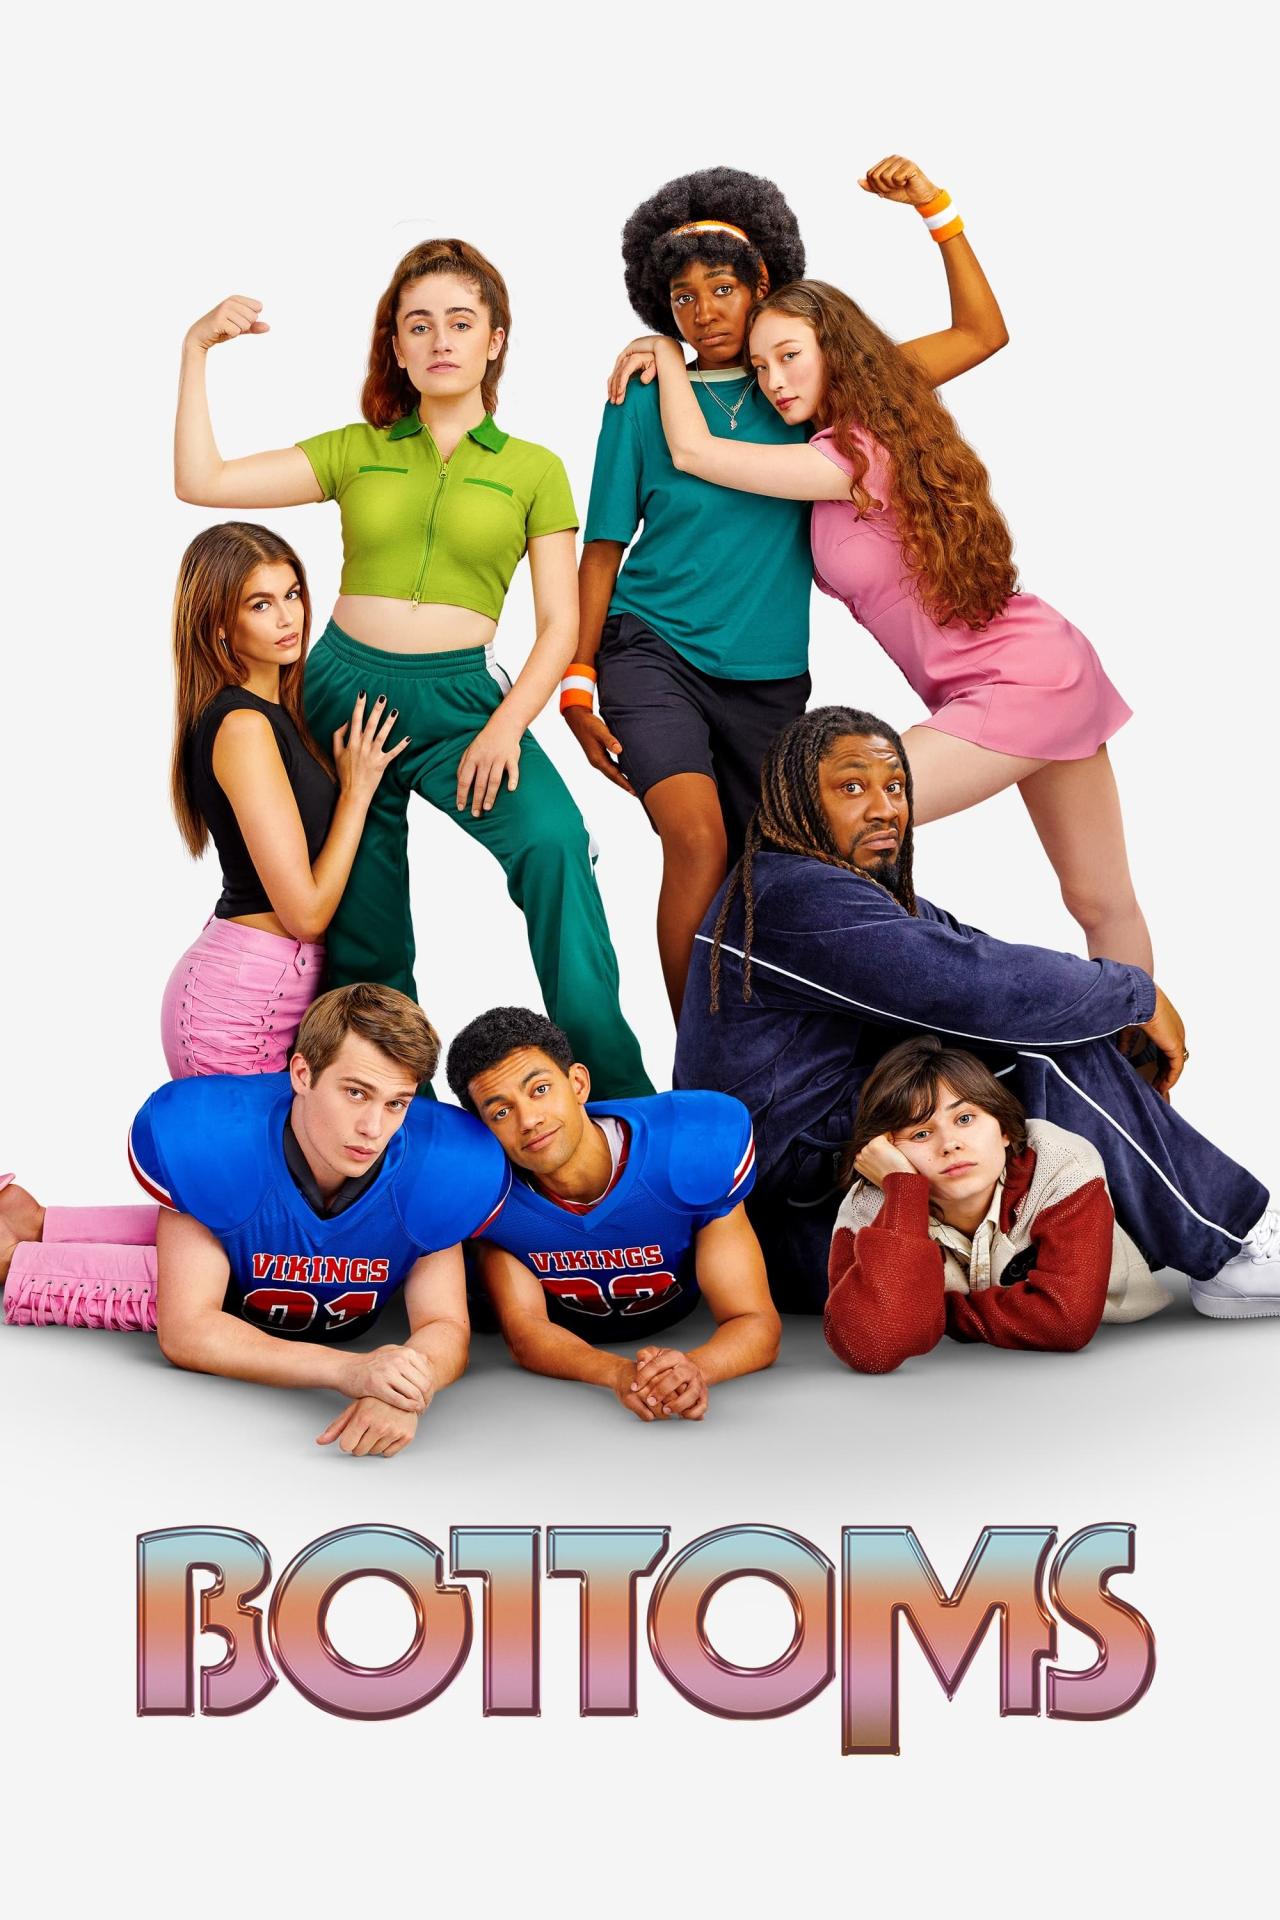 Bottoms est-il disponible sur Netflix ou autre ?